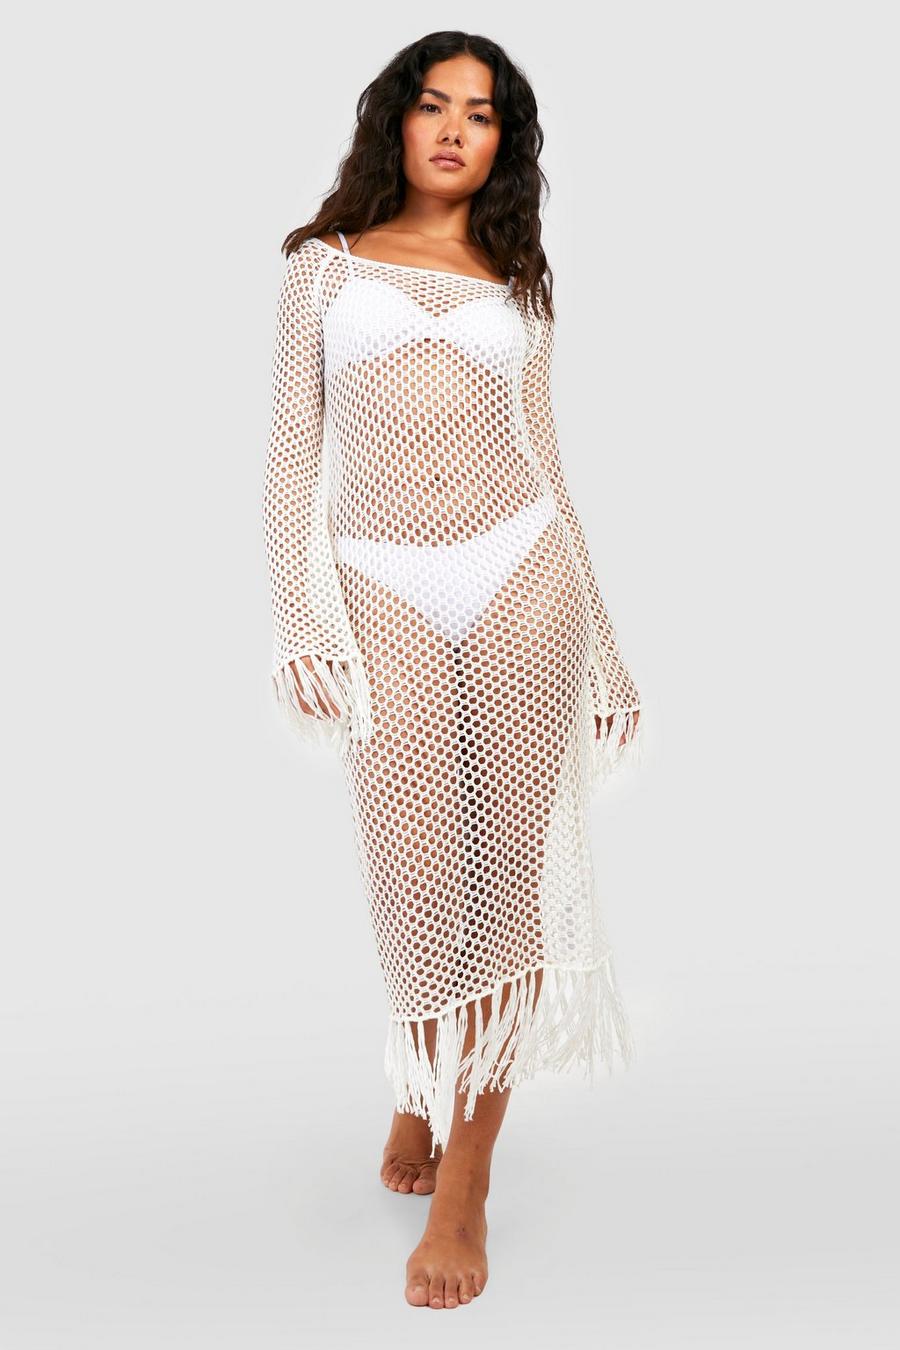 Cream white Crochet Fringed Cover Up Beach Dress